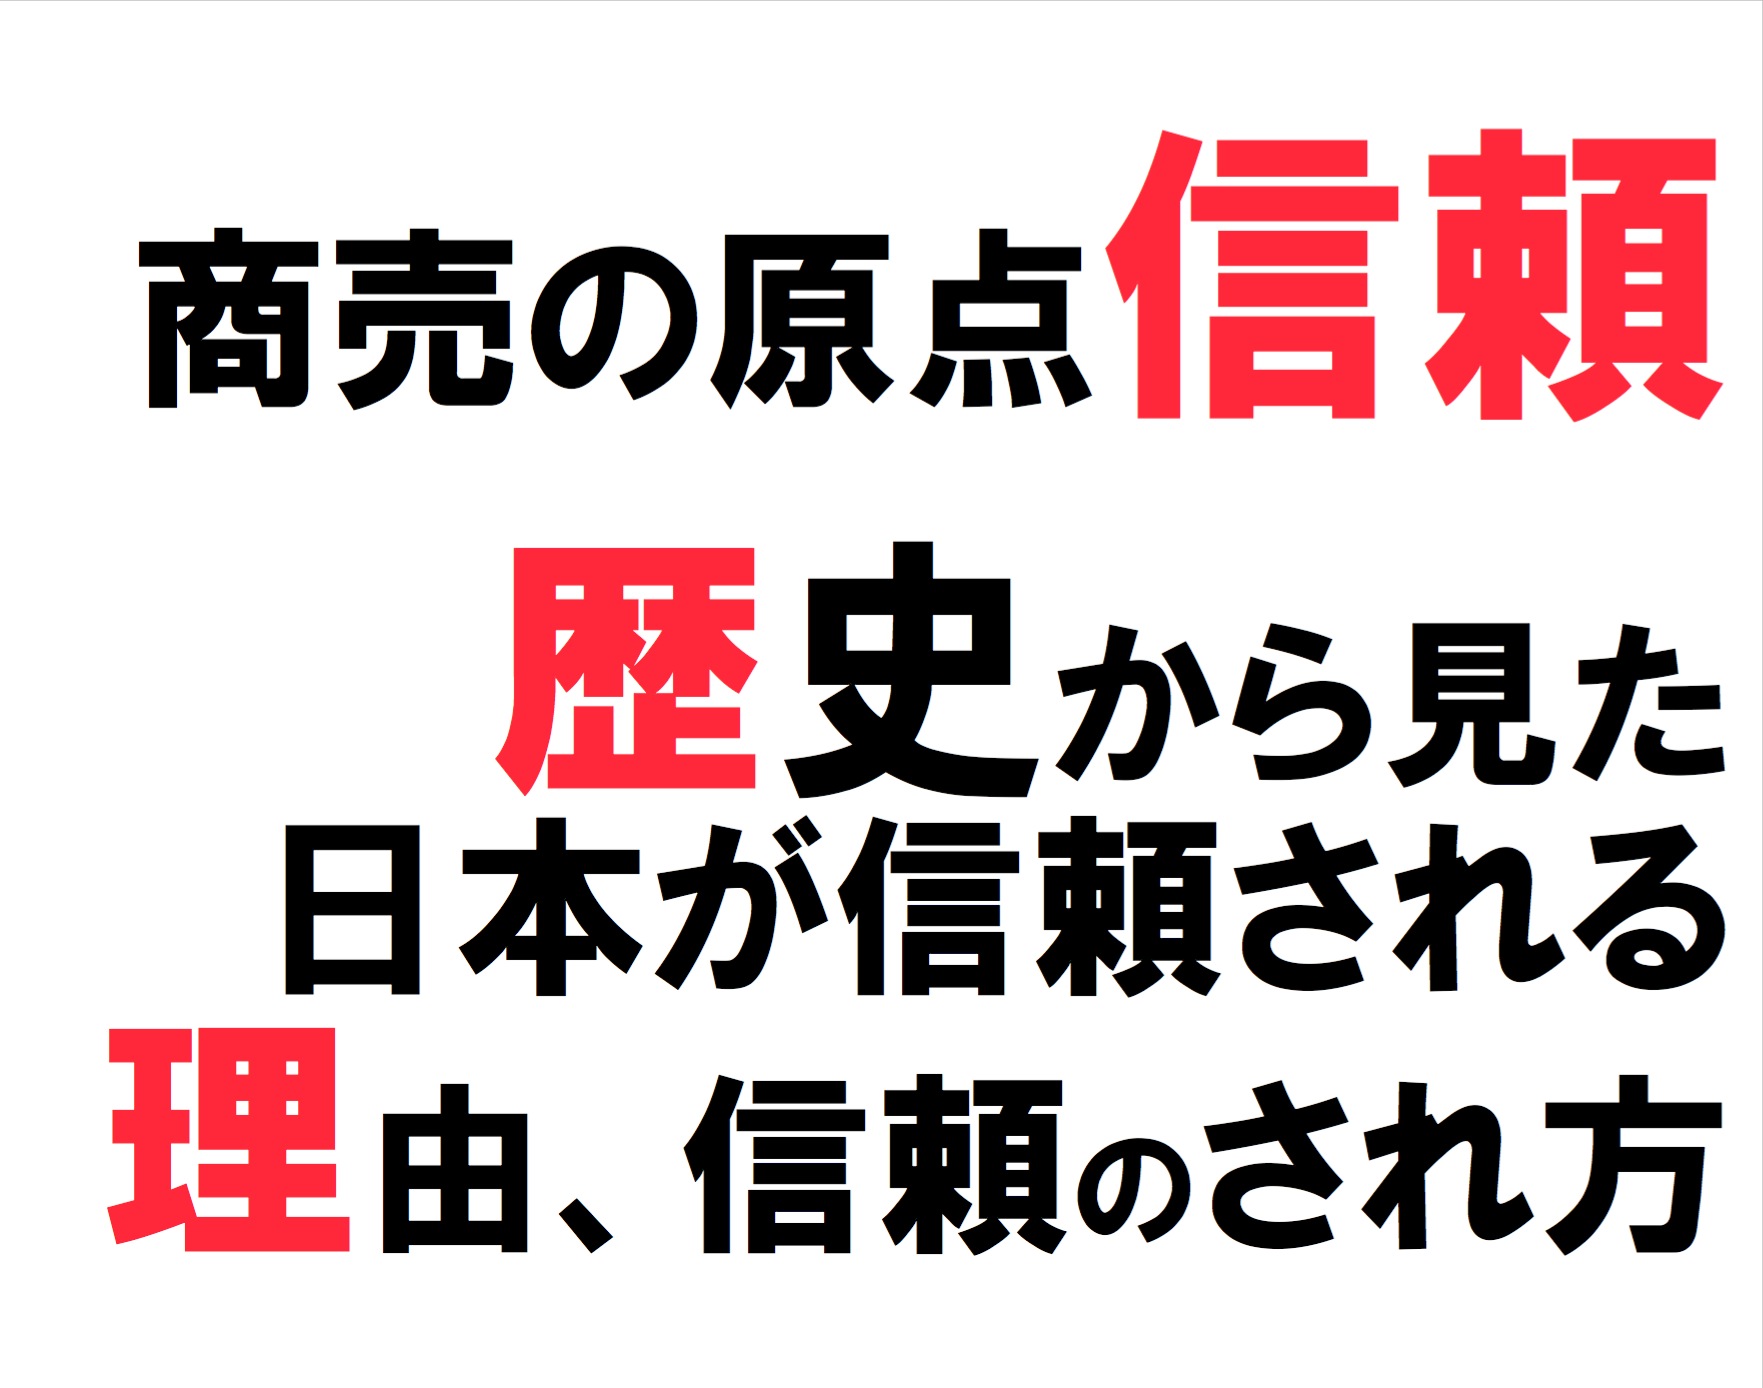 2013年10月ビジネスサークル『 徳 』～商売の原点 信頼。日本の歴史から見た、日本が信頼される理由、信頼のされ方～